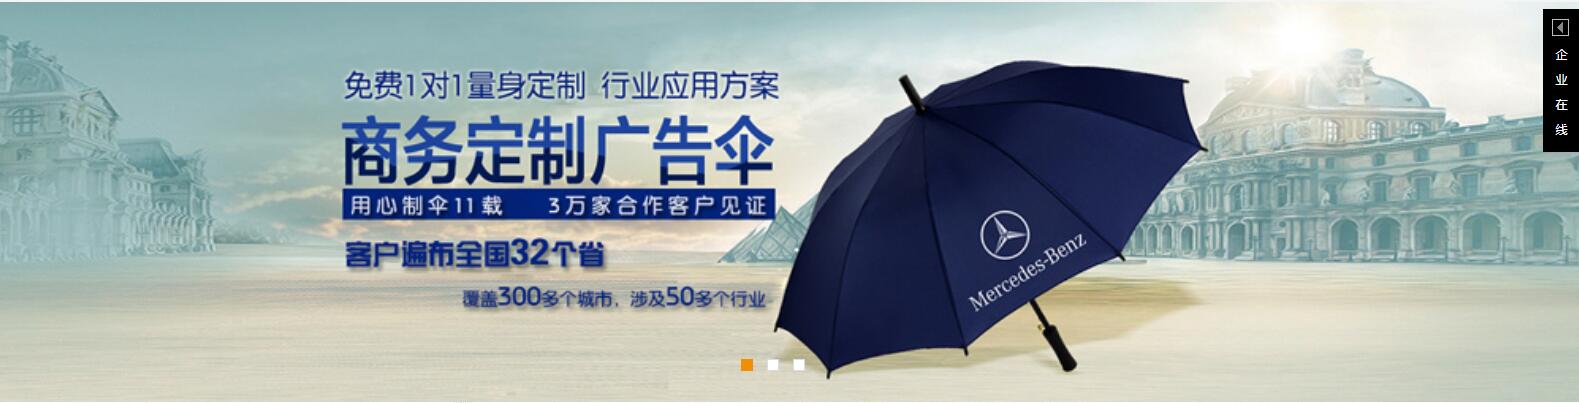 惠州雨伞批发、惠州雨伞批发价格、惠州雨伞批发厂